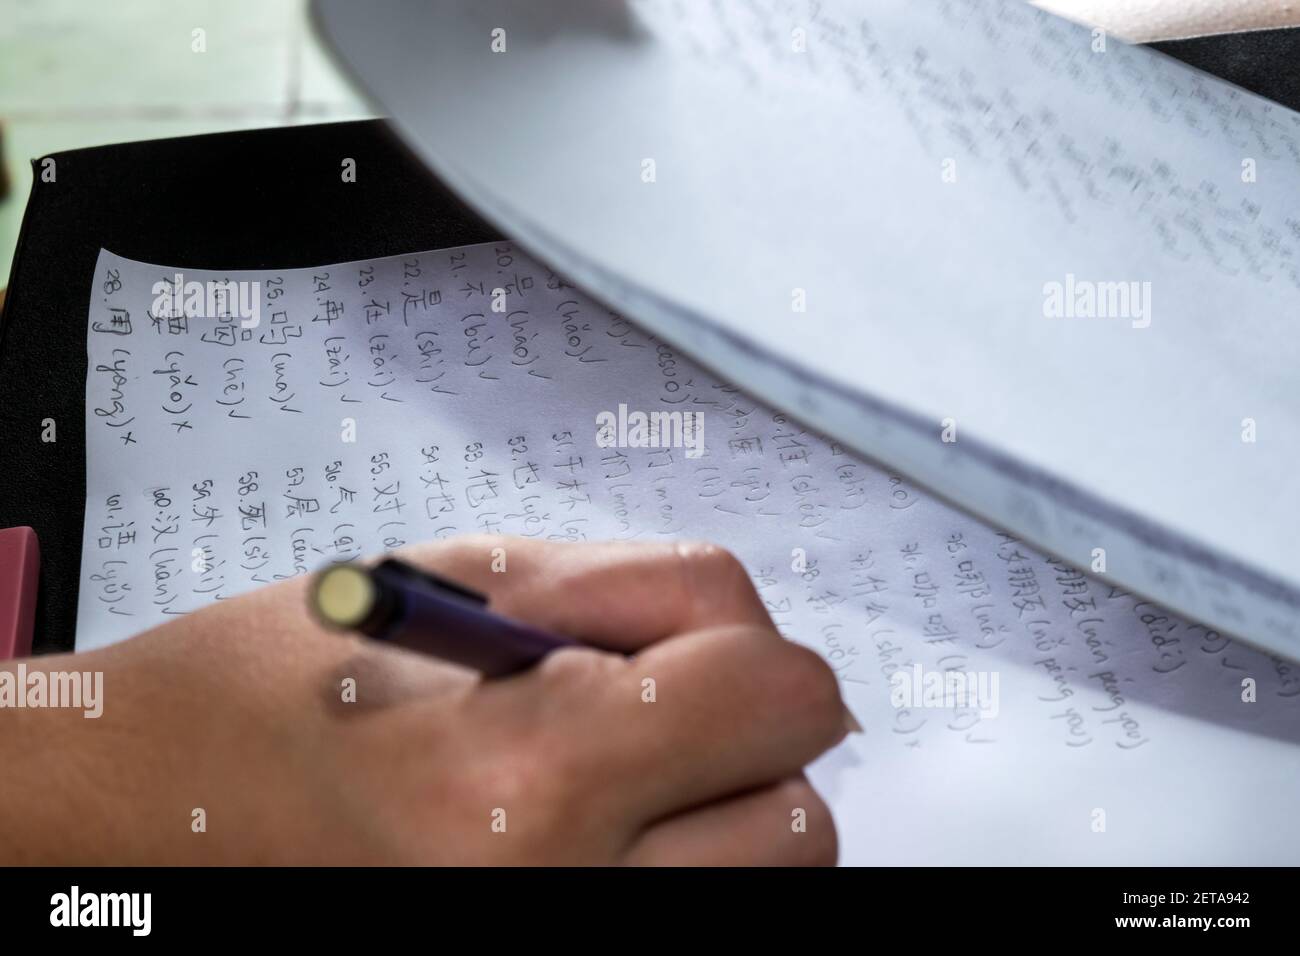 Des caractères chinois sont écrits sur des feuilles de papier blanches par une main humaine avec un crayon propulsant Banque D'Images